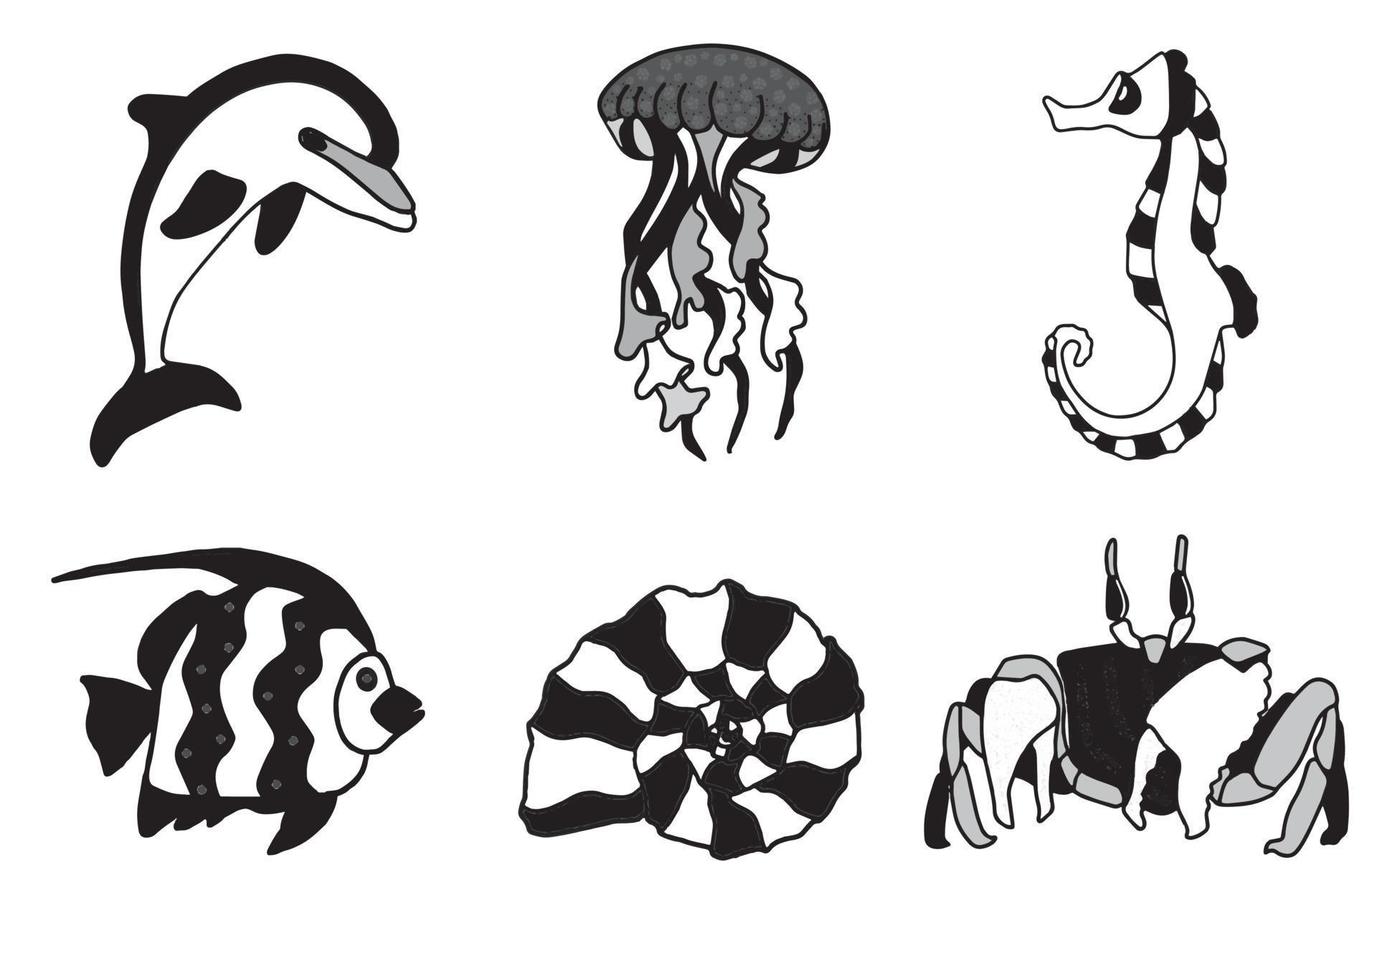 ensemble monochrome de la vie marine avec dauphin, méduse, hippocampe, poisson, coquillage et crabe. illustration vectorielle eps avec fond transparent. modèle de conception, autocollants, création de motifs. vecteur